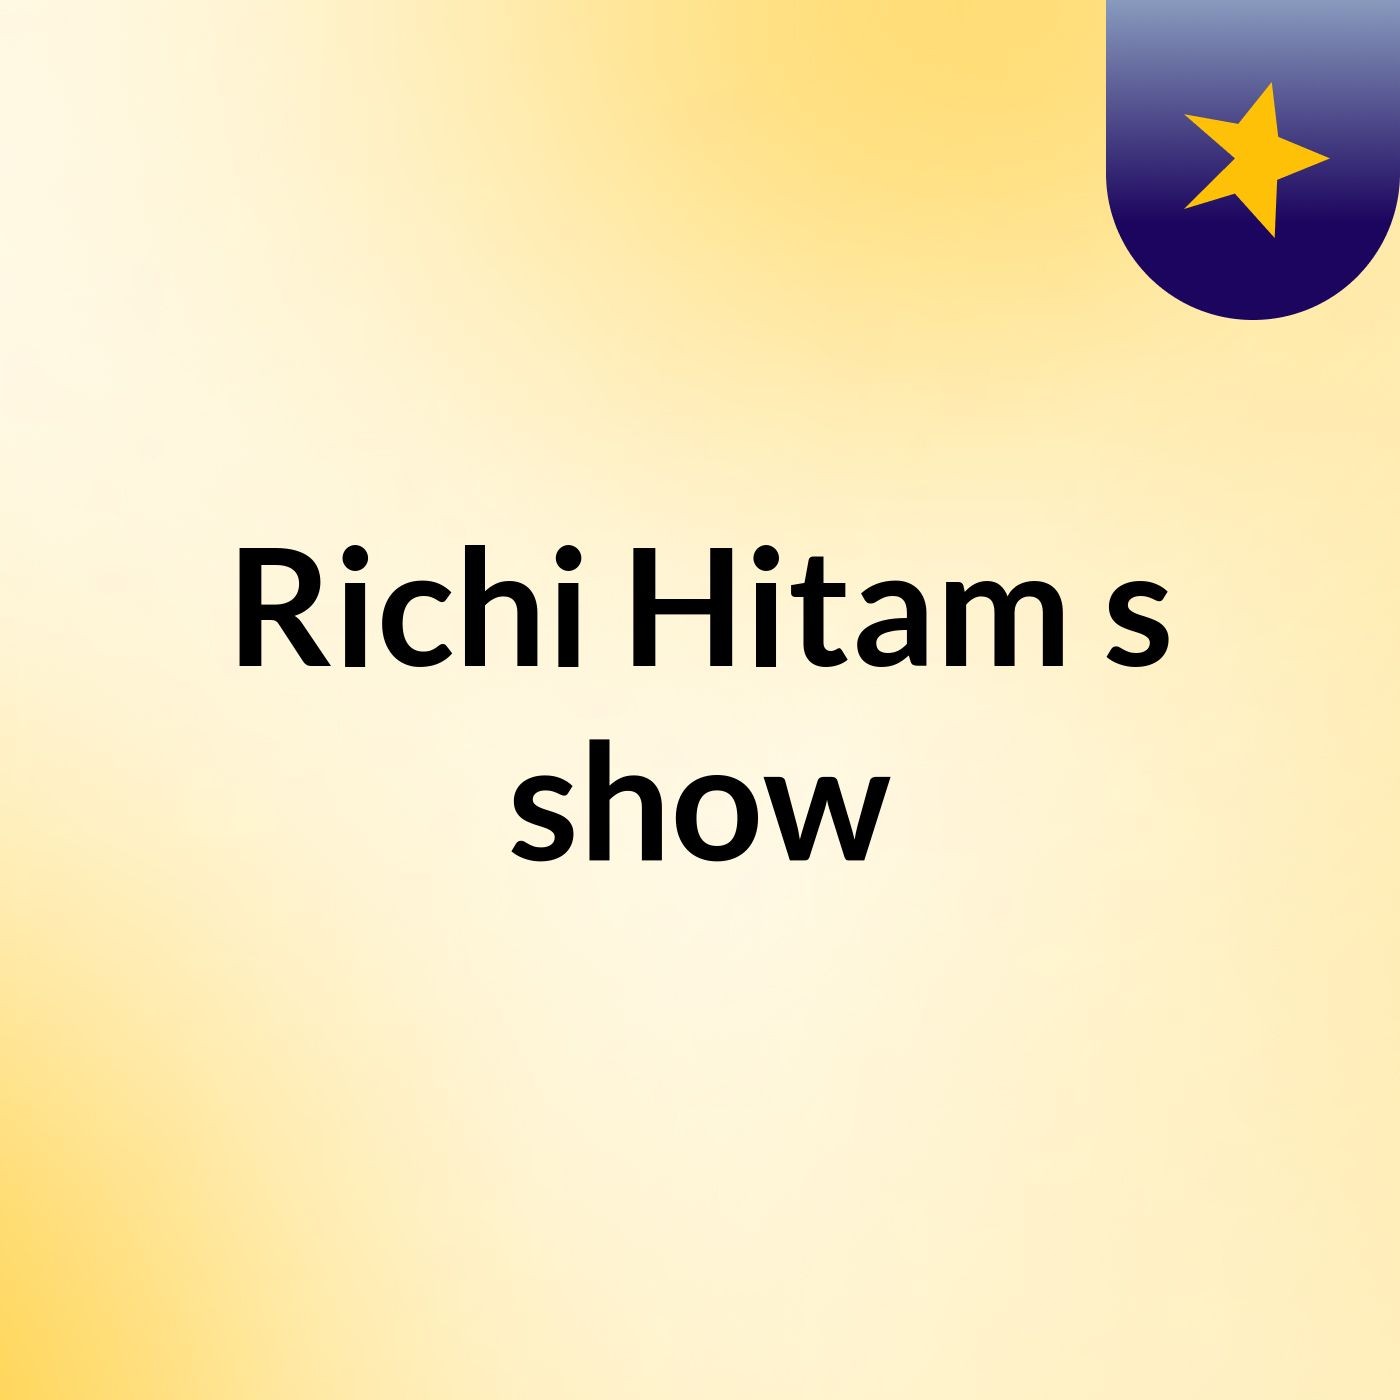 Richi Hitam's show